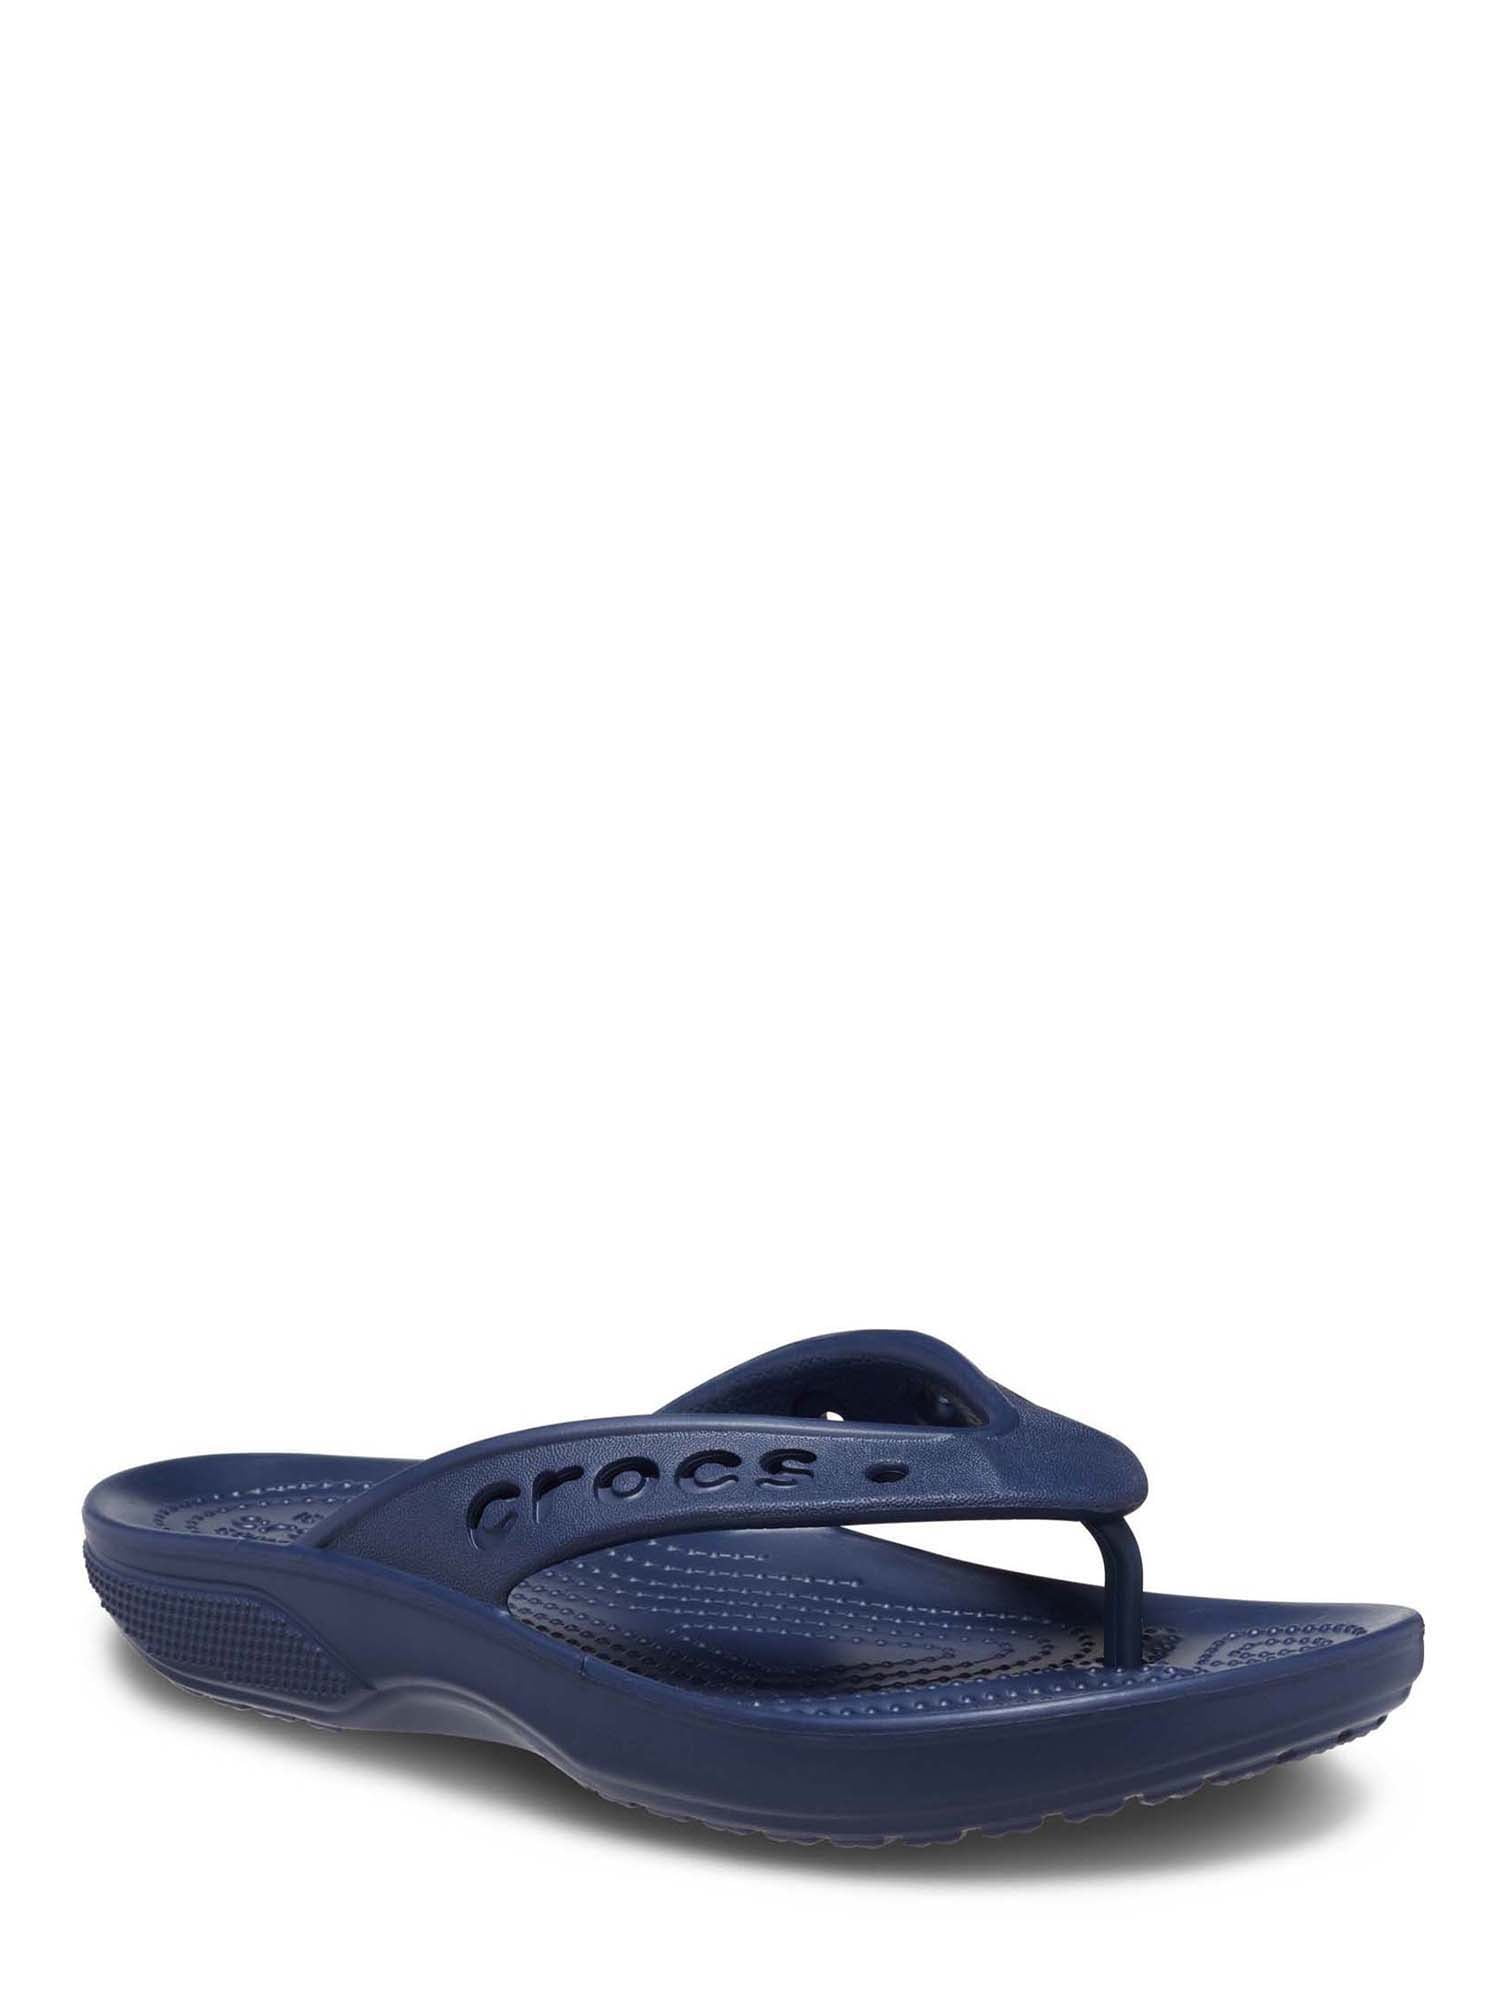 Crocs Men's and Women's Unisex Baya II Flip Sandals - Walmart.com